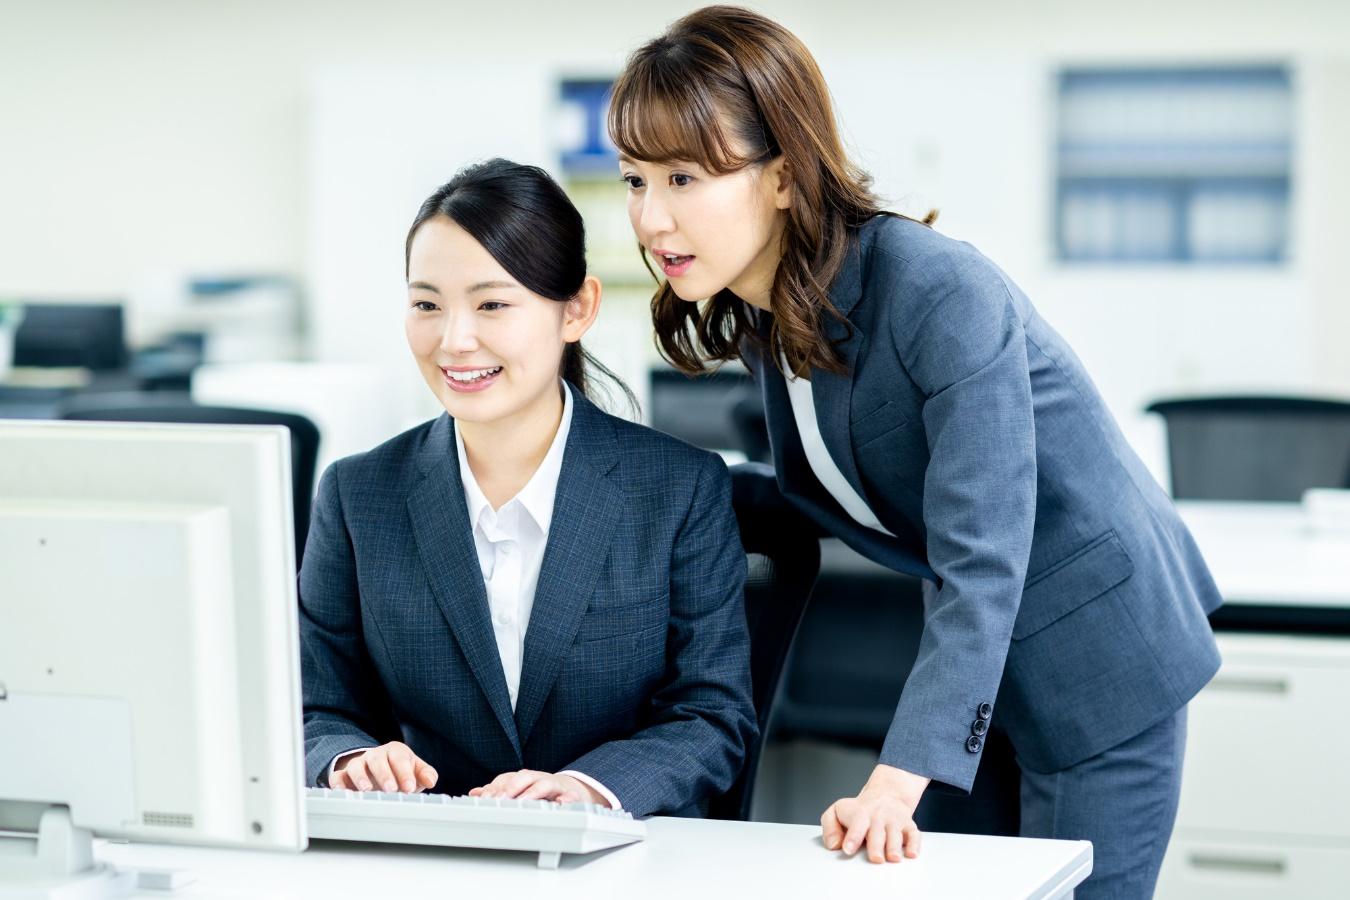 デスクトップパソコンを笑顔で操作する若い女性と、画面をのぞき込む女性